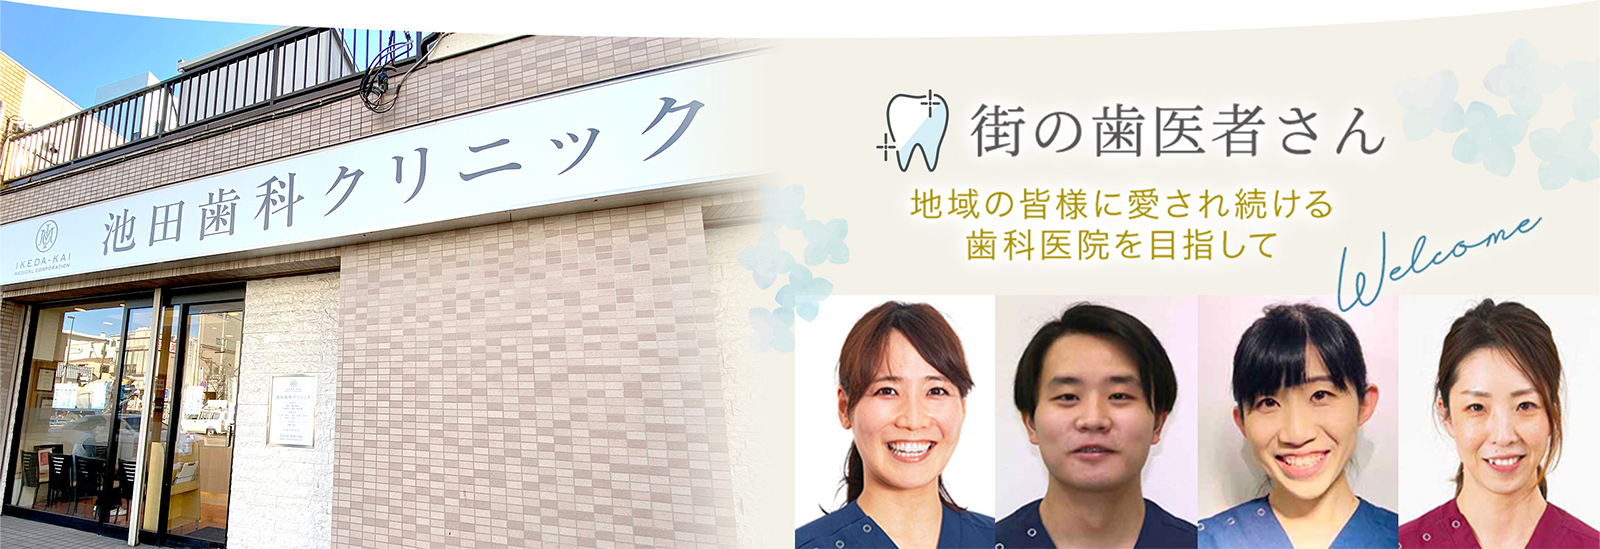 街の歯医者さん 地域の皆様に愛され続ける 歯科医院を目指して